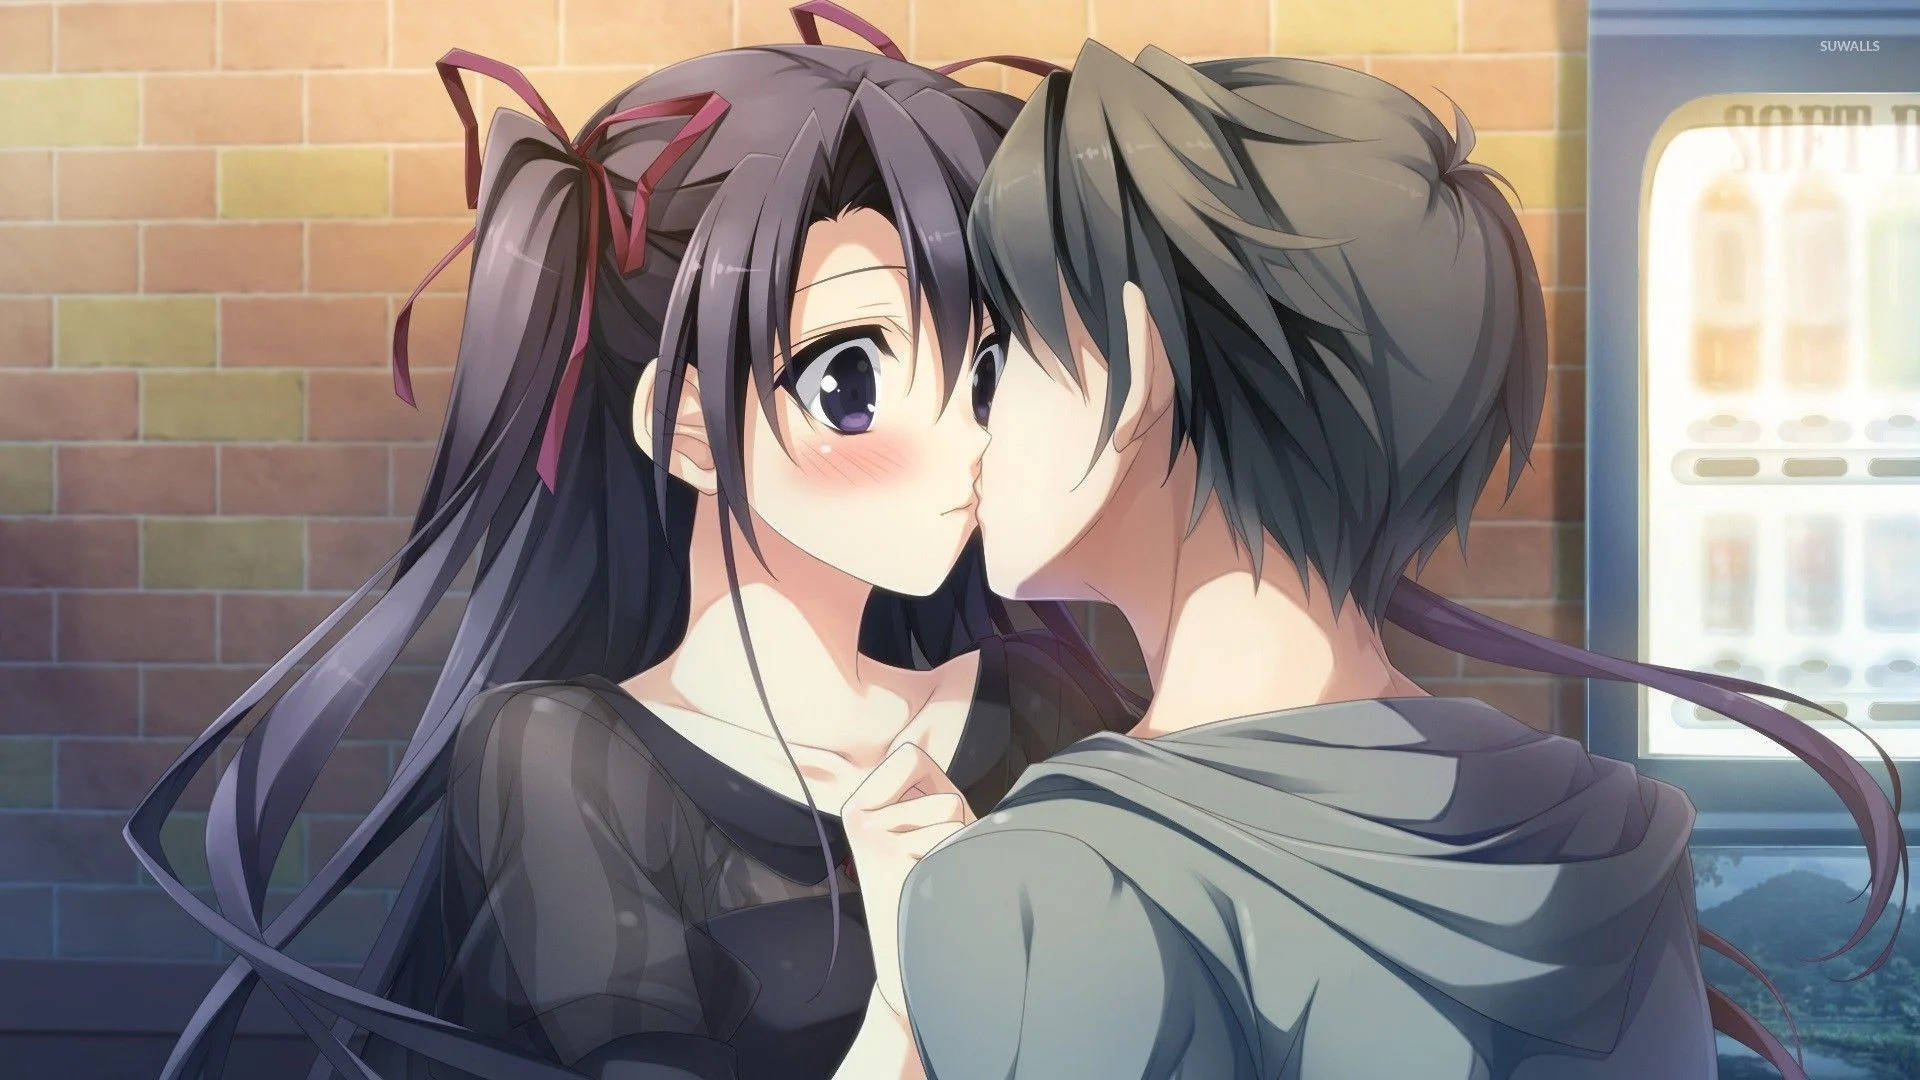 Cute Anime Couple Kiss Against Brick Wall Wallpaper